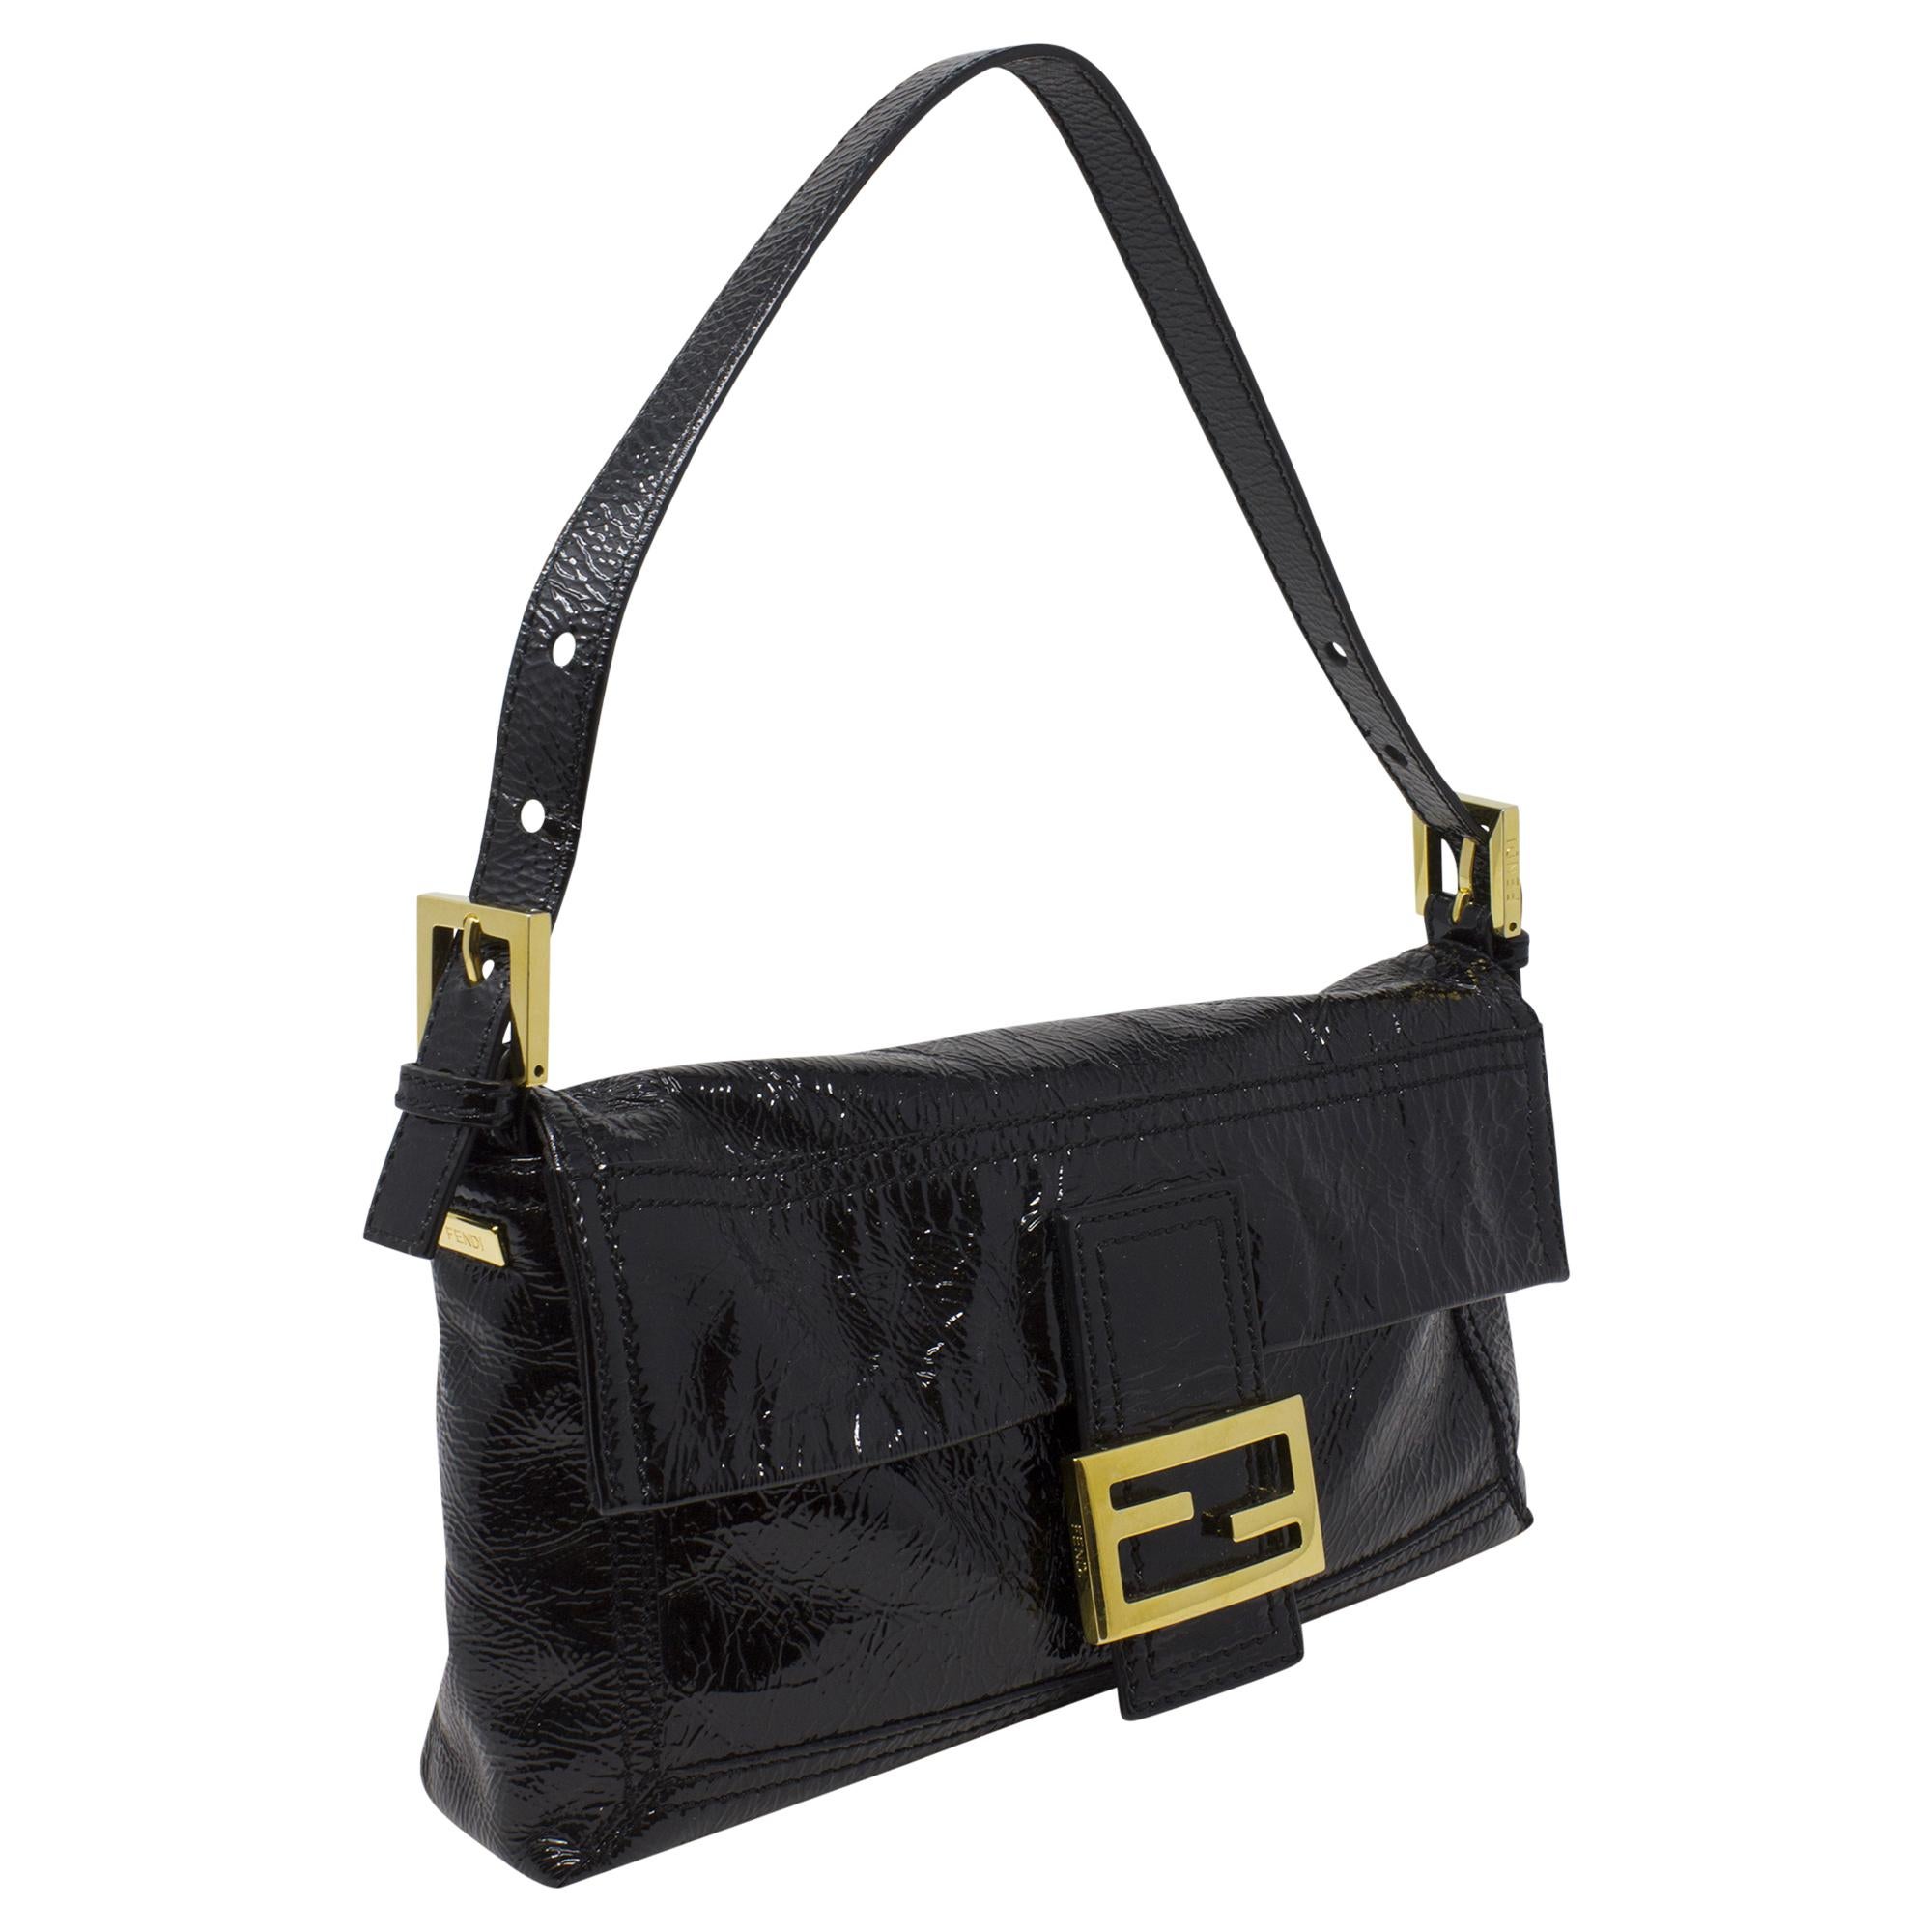 Die Black Patent Baguette von Fendi ist ein zeitloser Klassiker für die moderne Fashionista. Aus luxuriösem schwarzem Lackleder gefertigt, strahlt diese Tasche Raffinesse und Stil aus. Mit ihrem schlanken Design und den goldenen Beschlägen ist sie